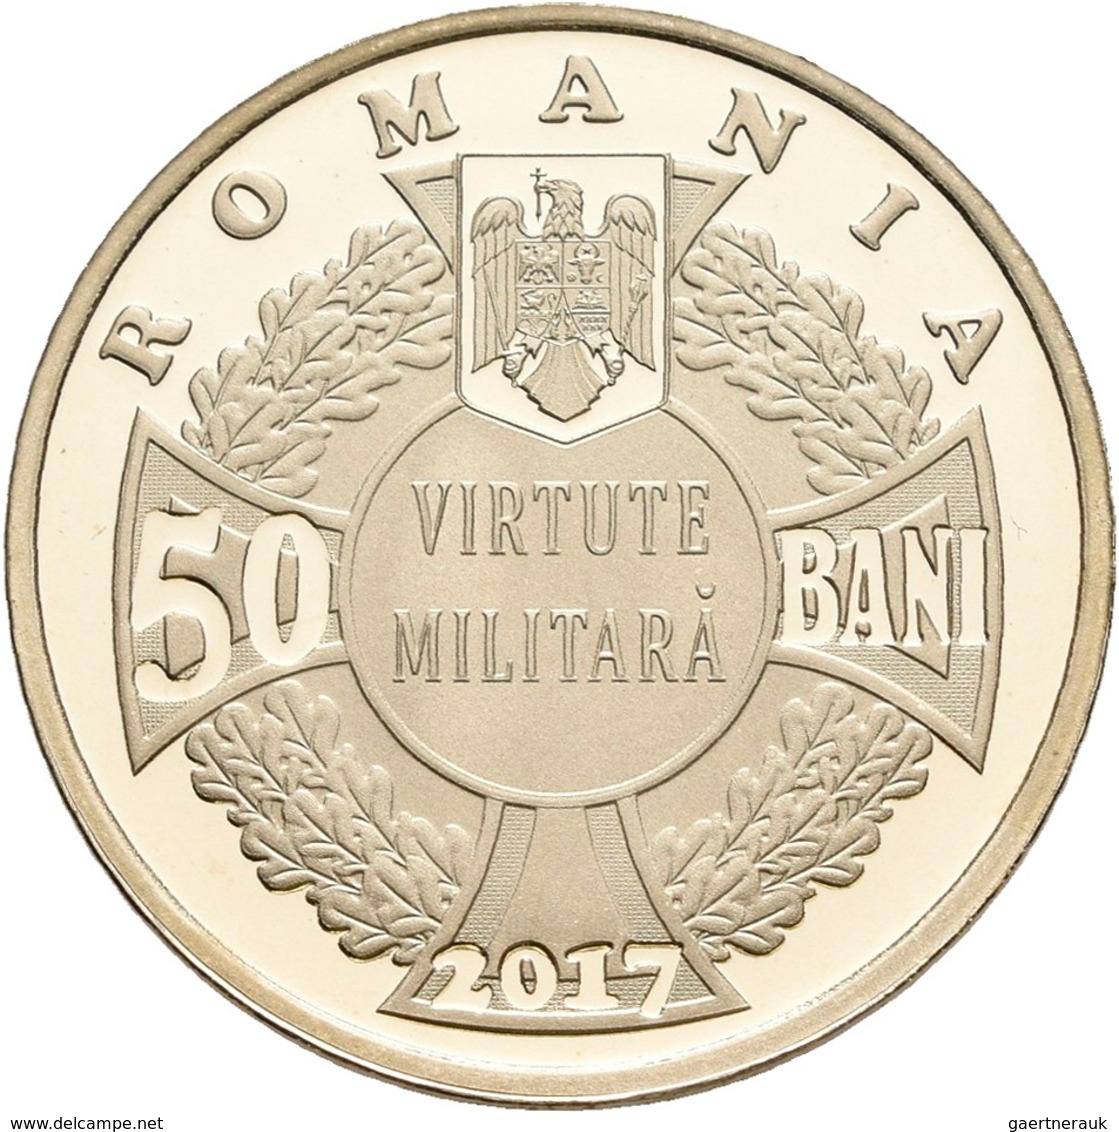 Rumänien: Kleines Lot 4 Gedenkmünzen zu je 50 Bani 2017+2018. Polierte Platte.